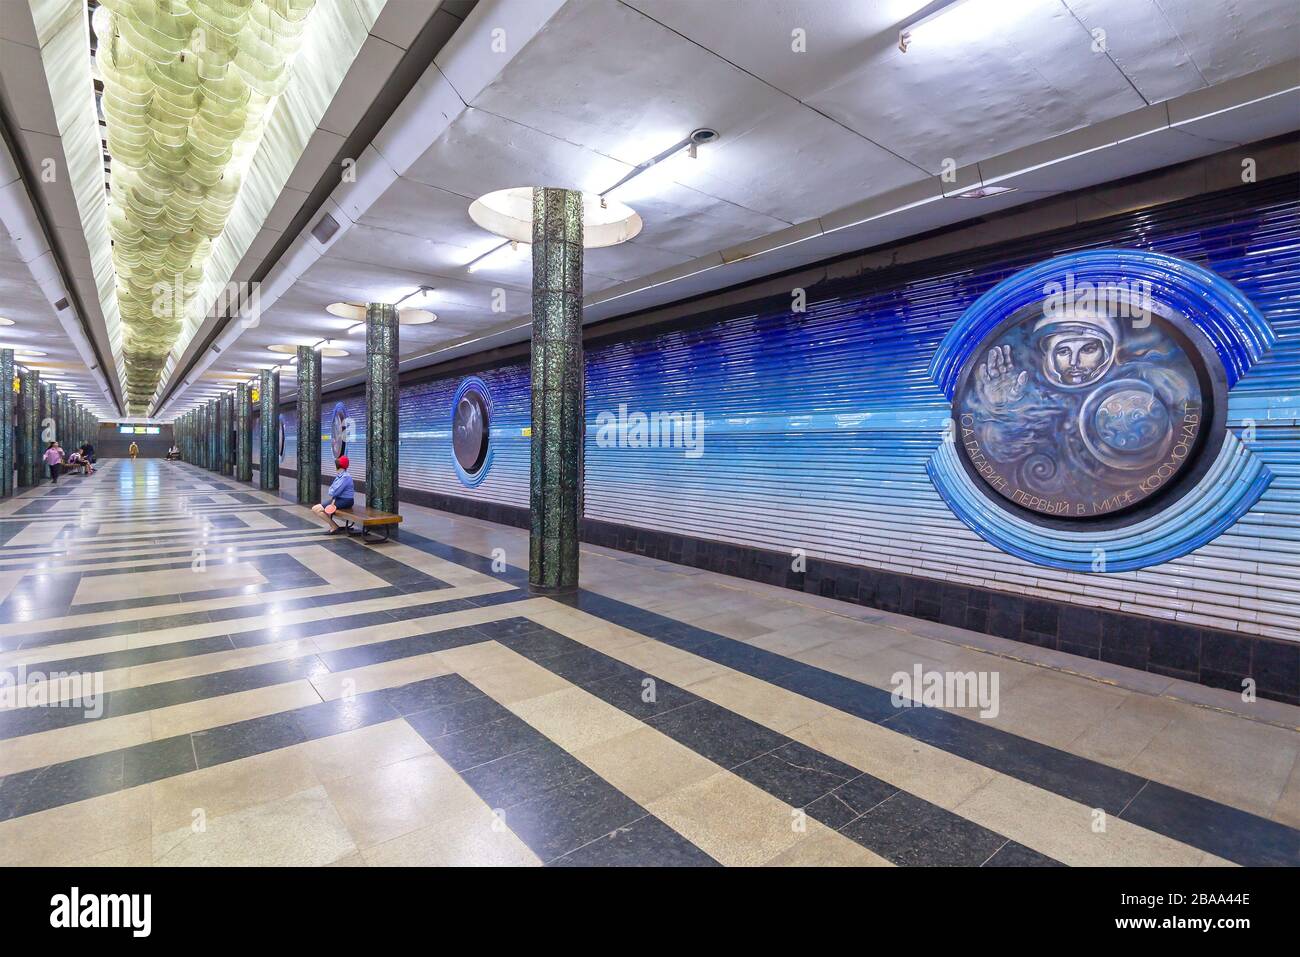 La station de métro Kosmonavtlar est décorée dans un programme spatial à Tachkent, en Ouzbékistan. Nom de la station de métro Cosmonaut écrit en cyrillique de l'époque soviétique. Banque D'Images